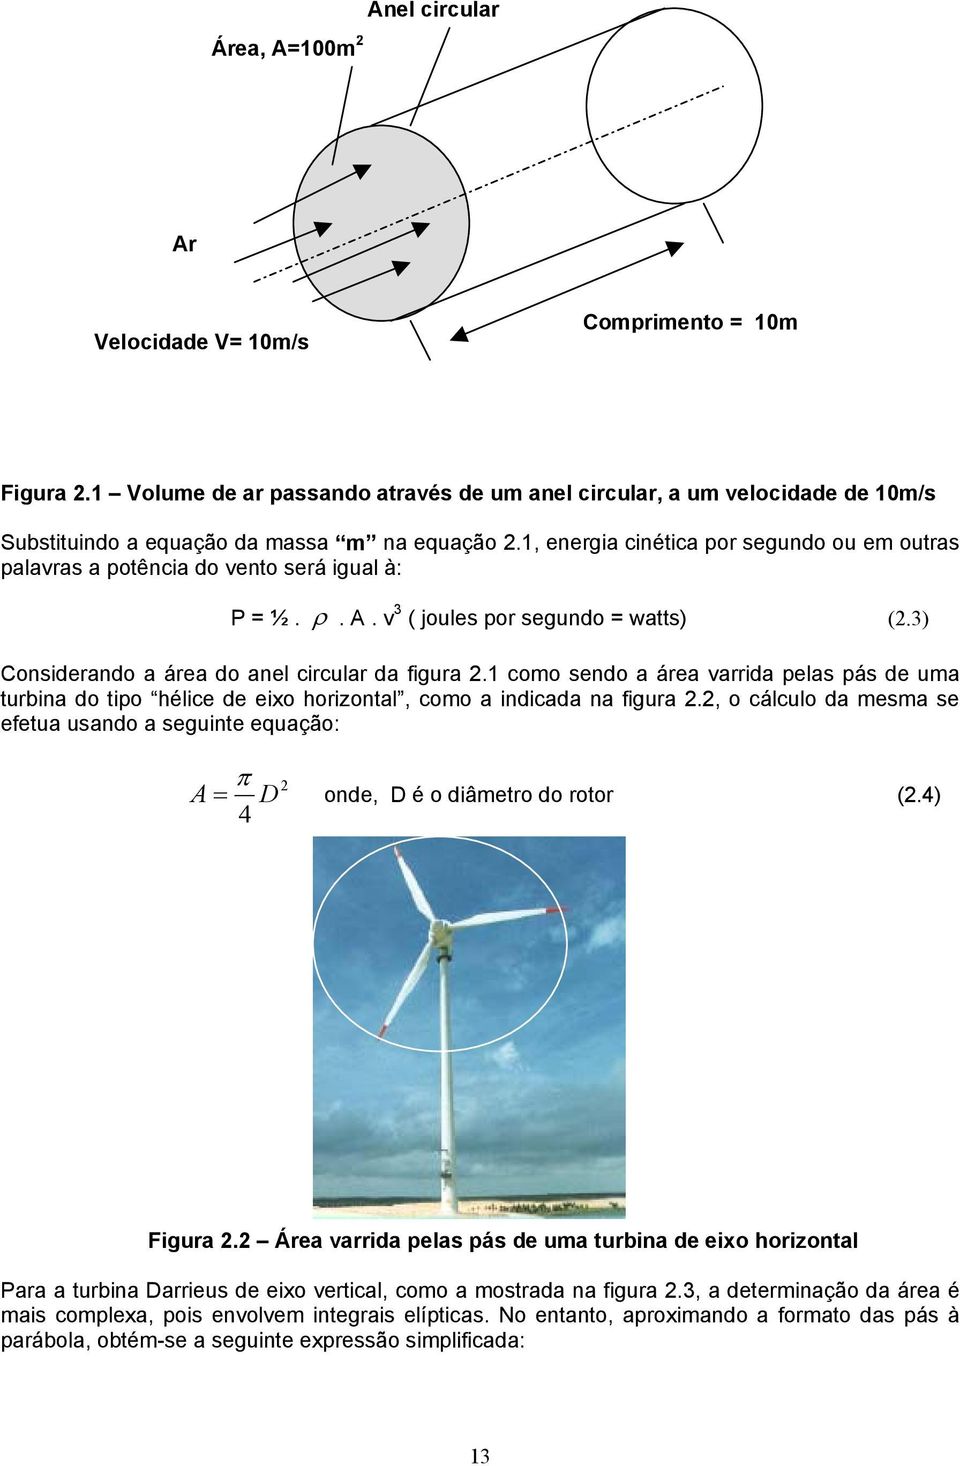 1, energia cinética por segundo ou em outras palavras a potência do vento será igual à: P = ½. ρ. A. v 3 ( joules por segundo = watts) (2.3) Considerando a área do anel circular da figura 2.